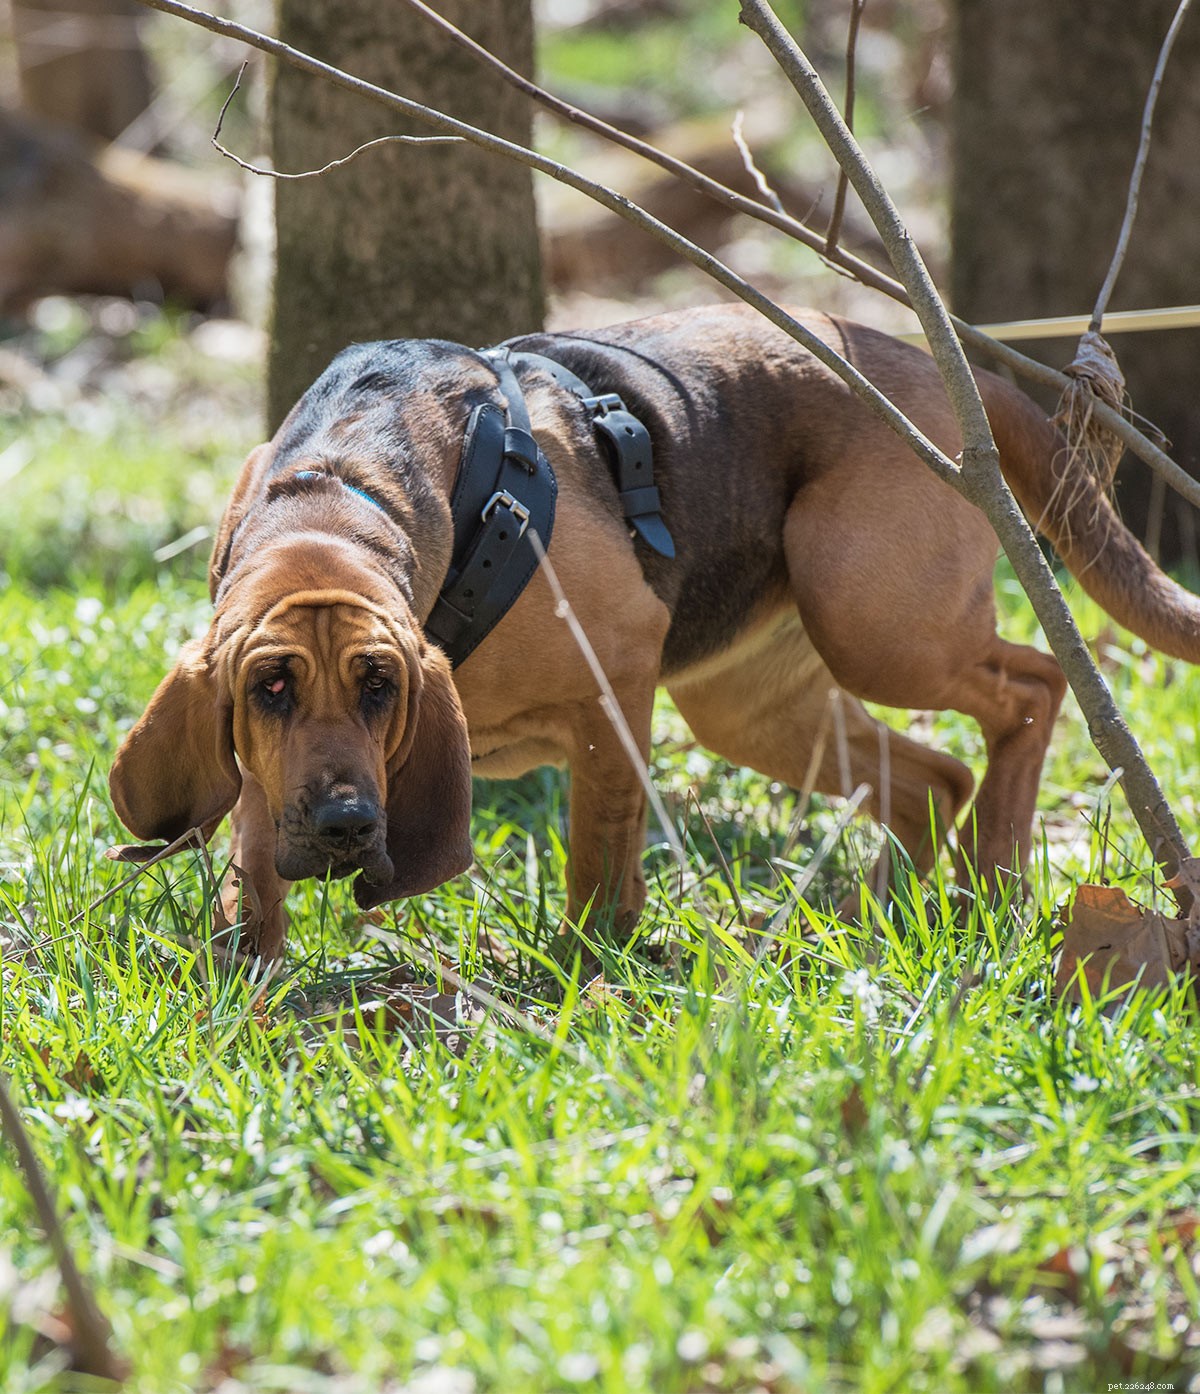 Centrum pro plemeno psů Bloodhound – Seznámení s jejich klady a zápory